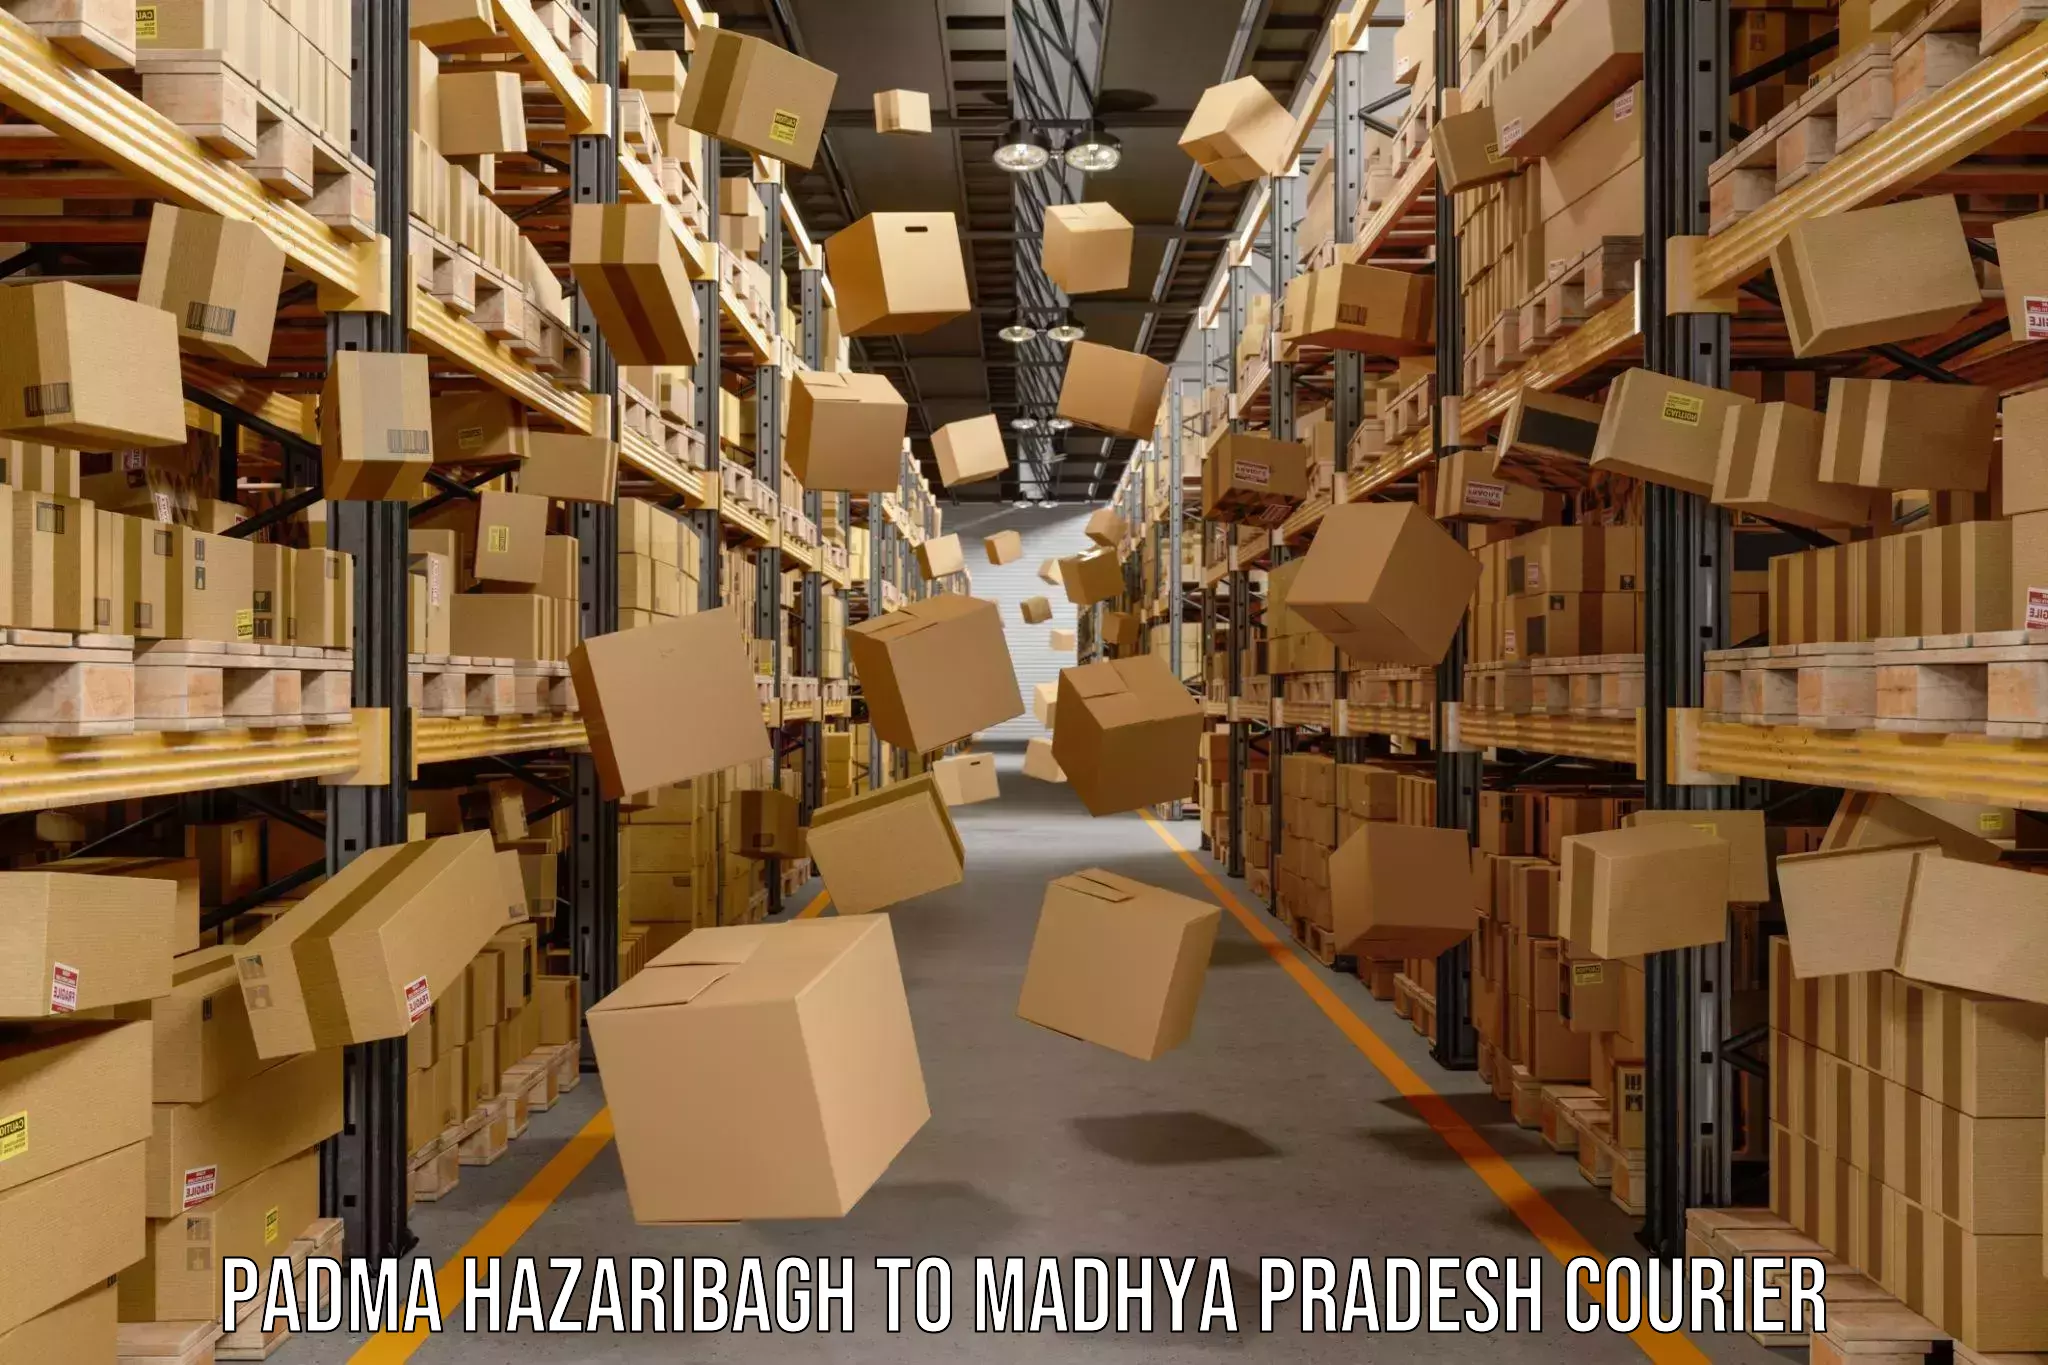 Next-day freight services Padma Hazaribagh to Madhya Pradesh